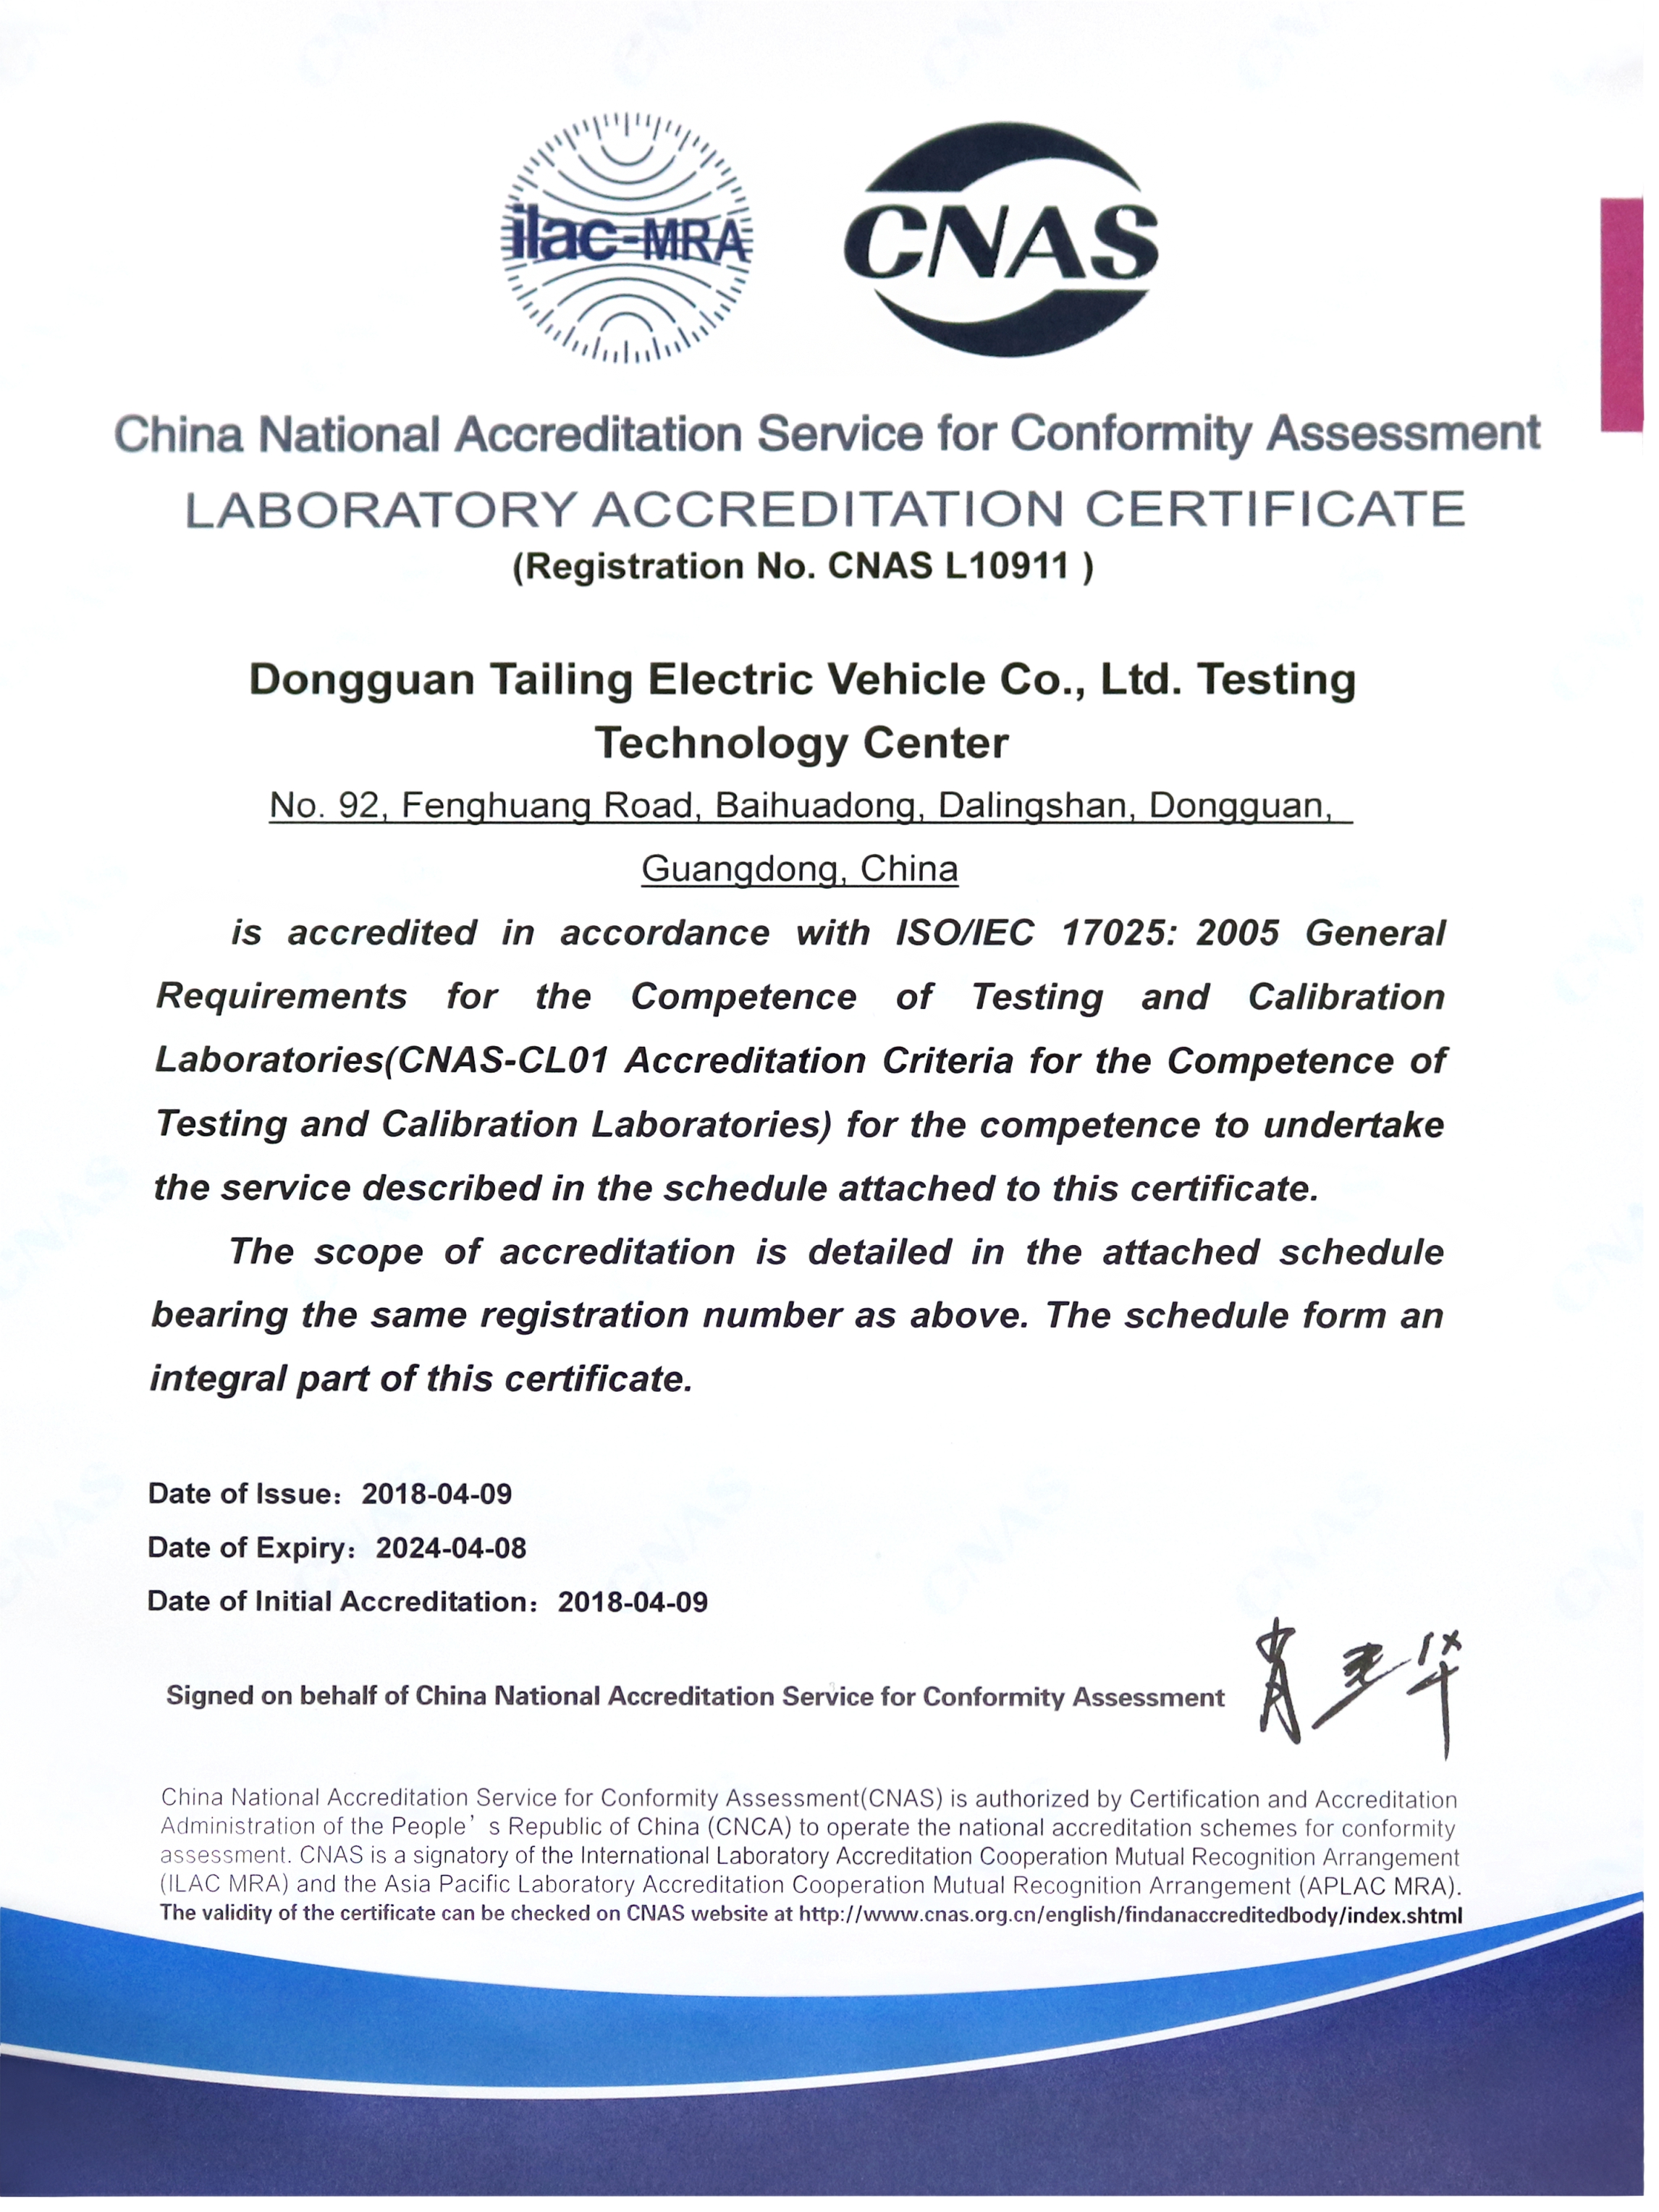 中国CNA合格认可证书.jpg